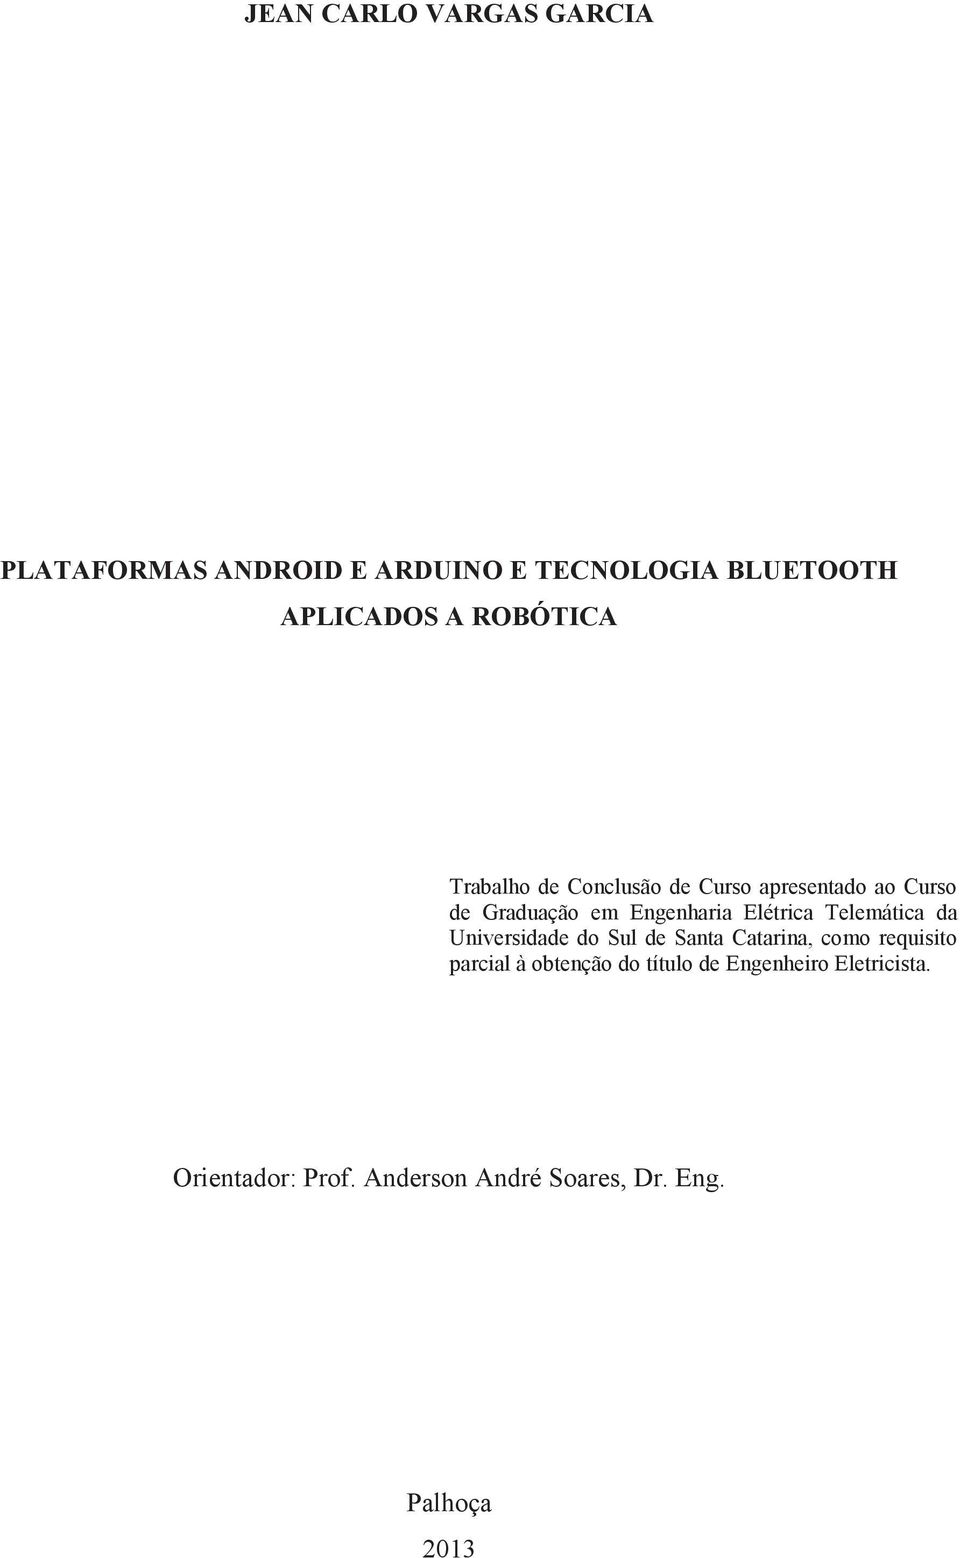 Elétrica Telemática da Universidade do Sul de Santa Catarina, como requisito parcial à